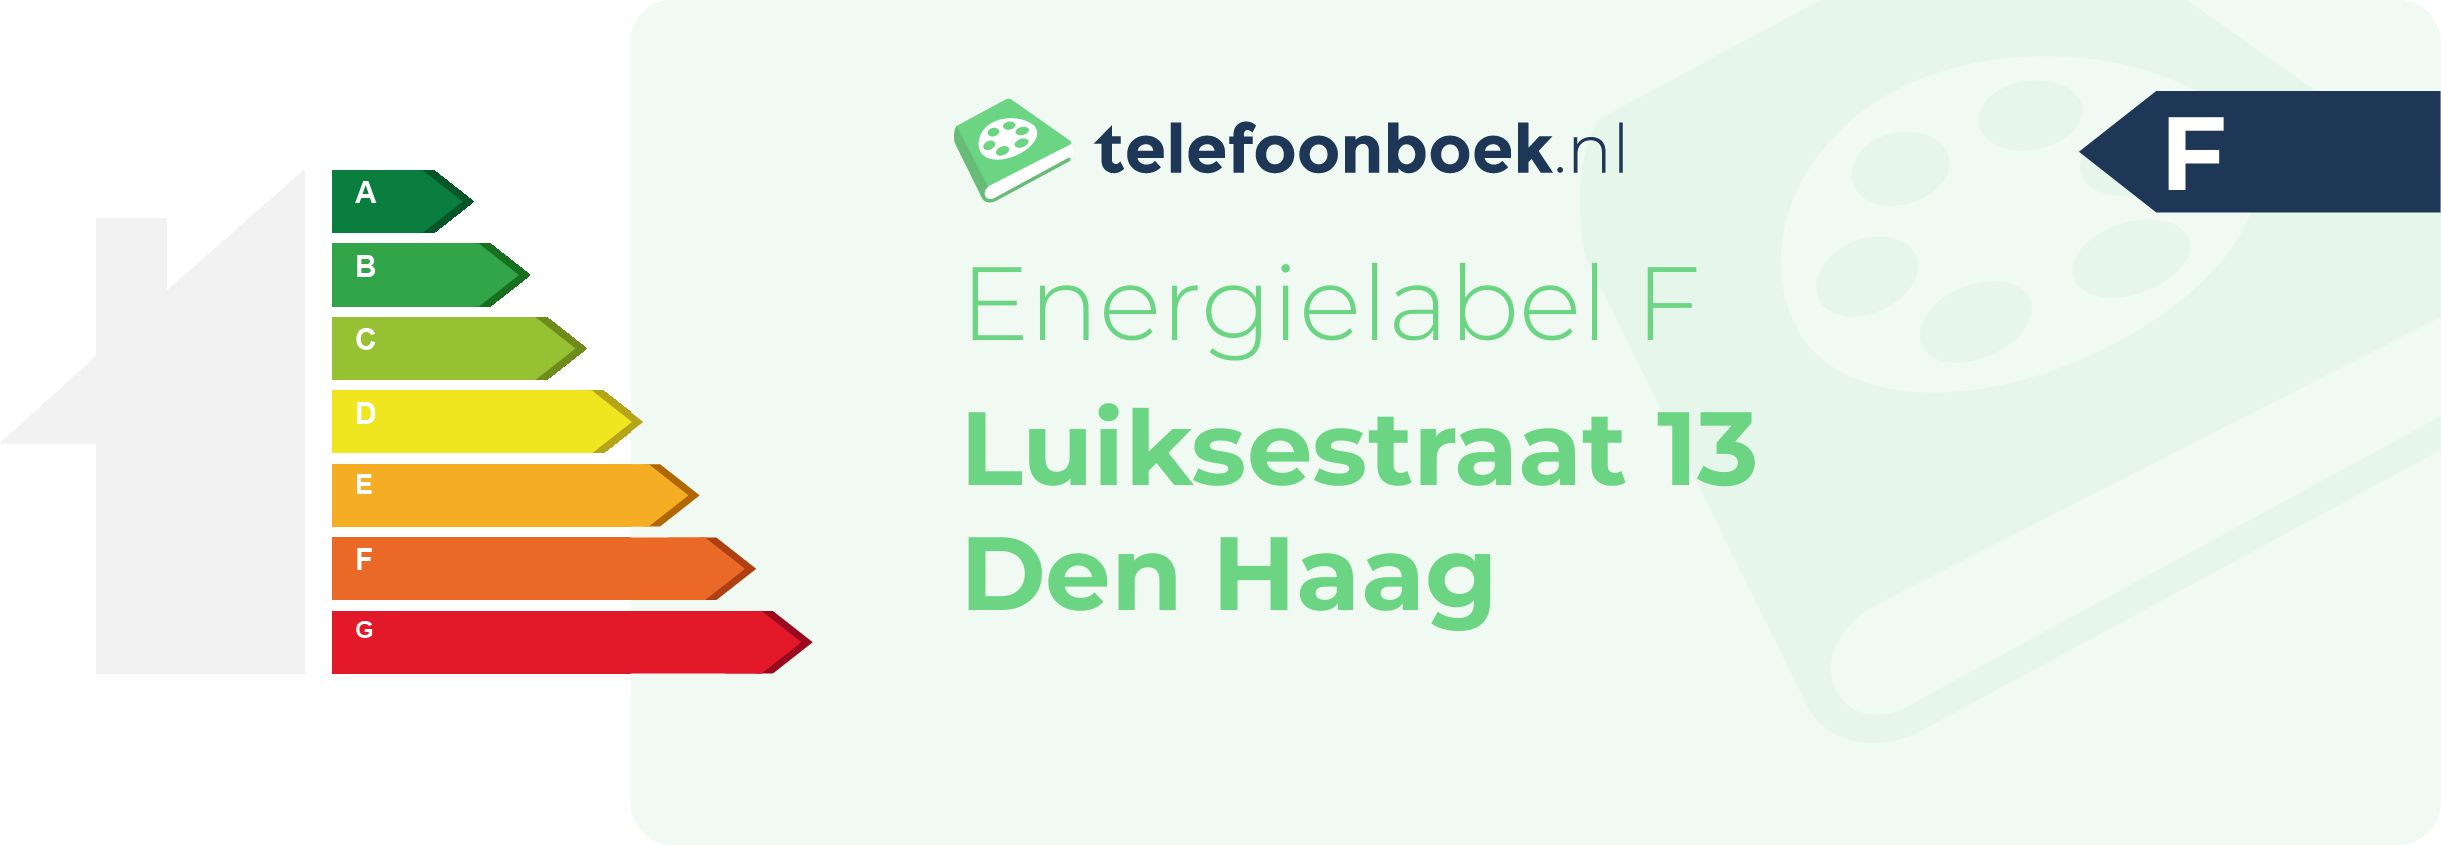 Energielabel Luiksestraat 13 Den Haag